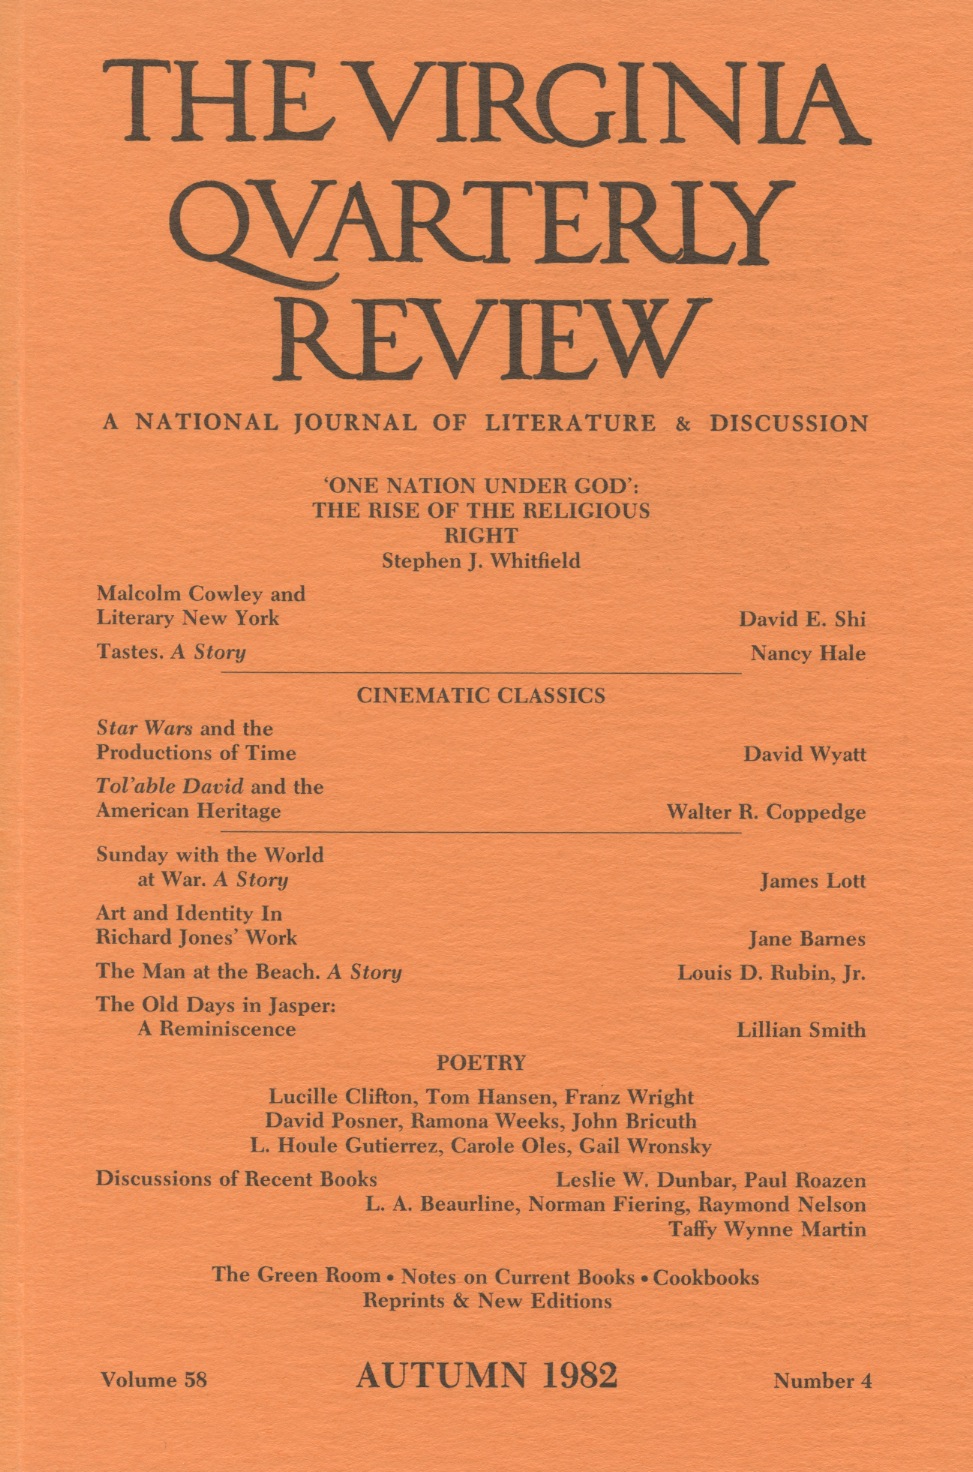 Virginia Quarterly Review, Autumn 1982 cover